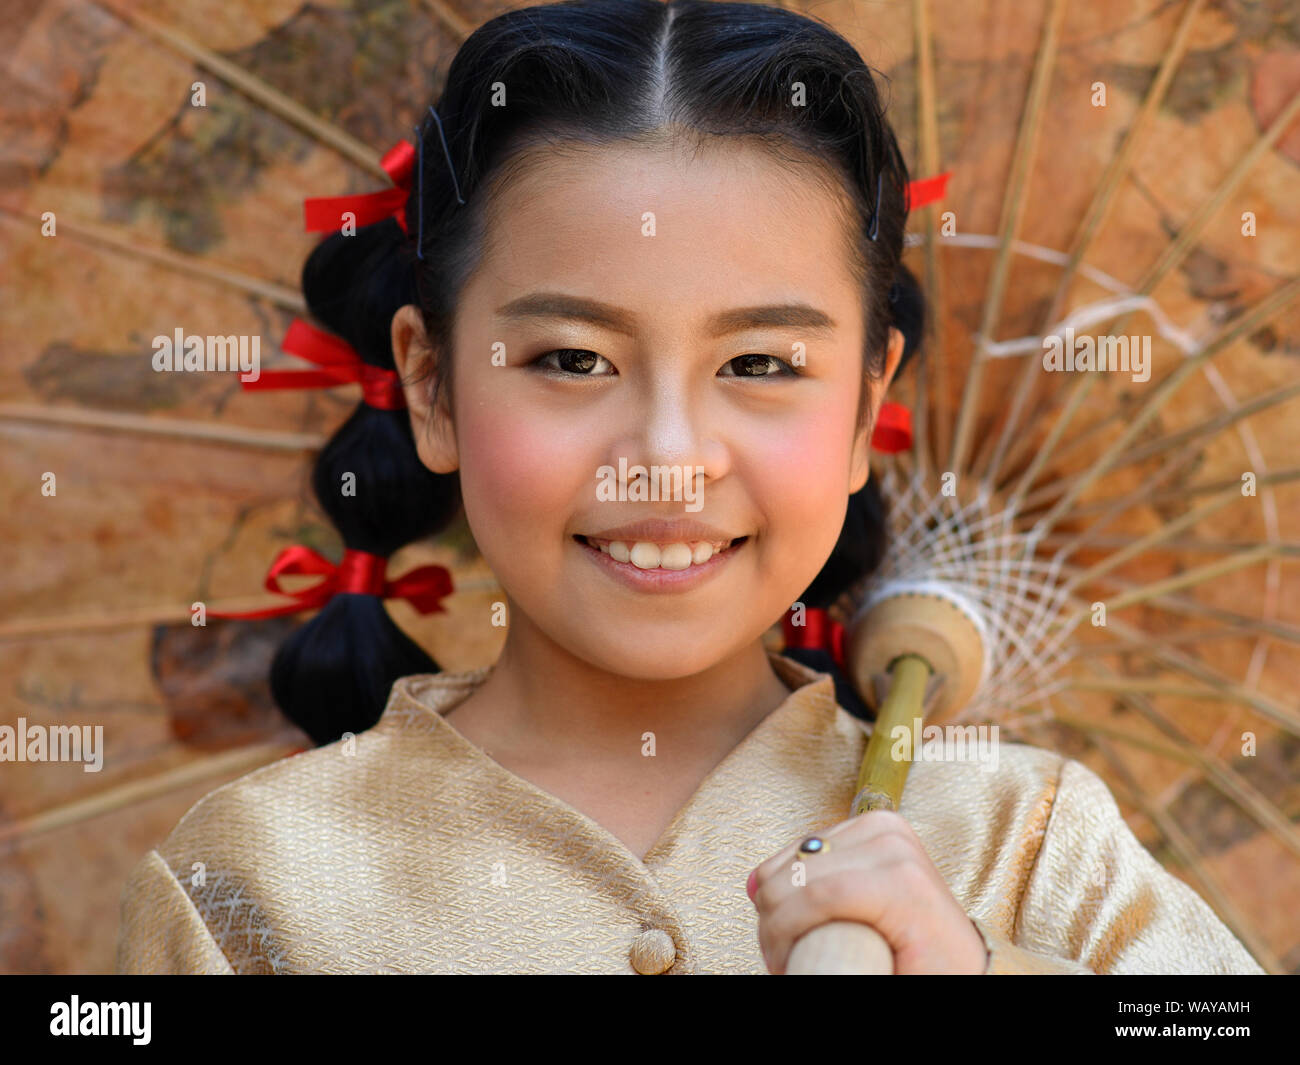 Vestida de pre-adolescentes tailandeses chica con el pelo rojo cintas posa para la cámara bajo un chino tradicional de papel-aceite sombrilla. Foto de stock